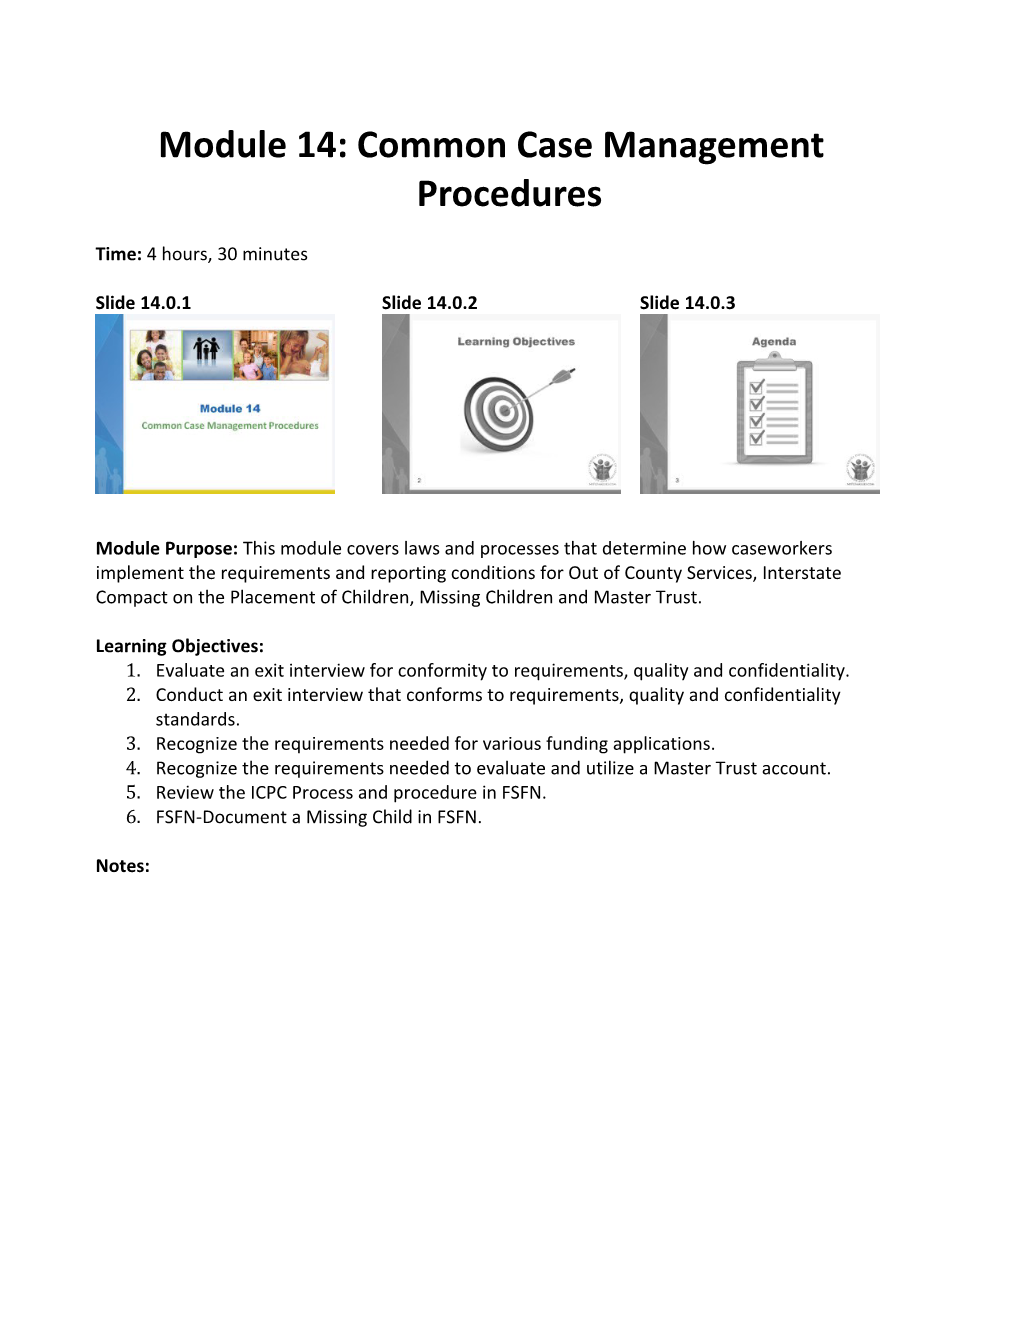 Module 14: Common Case Management Procedures